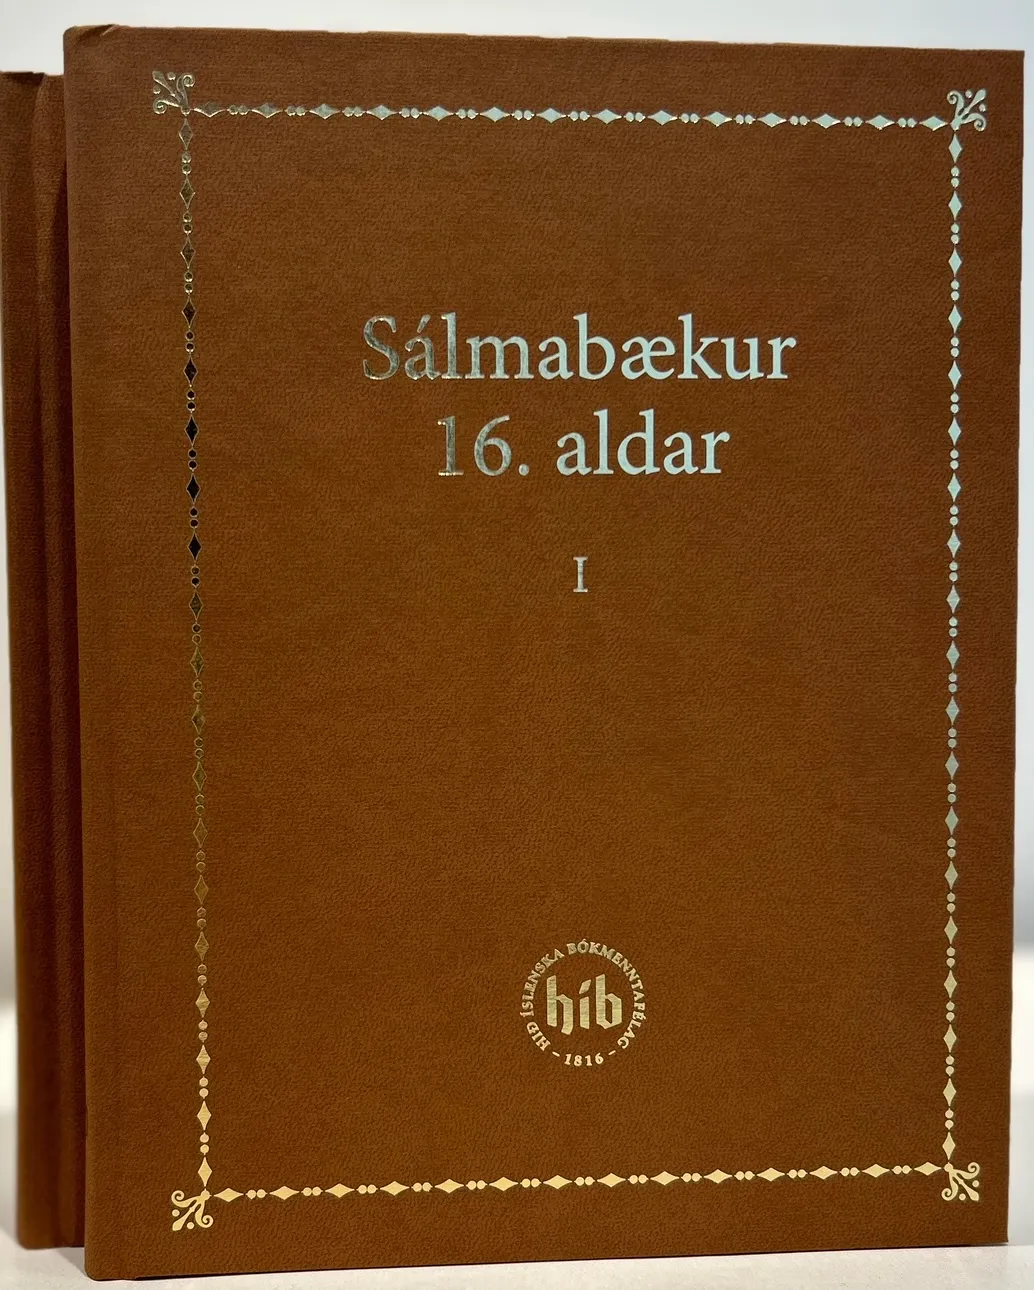 Bókakápa: Sálmabækur 16. aldar, I og II